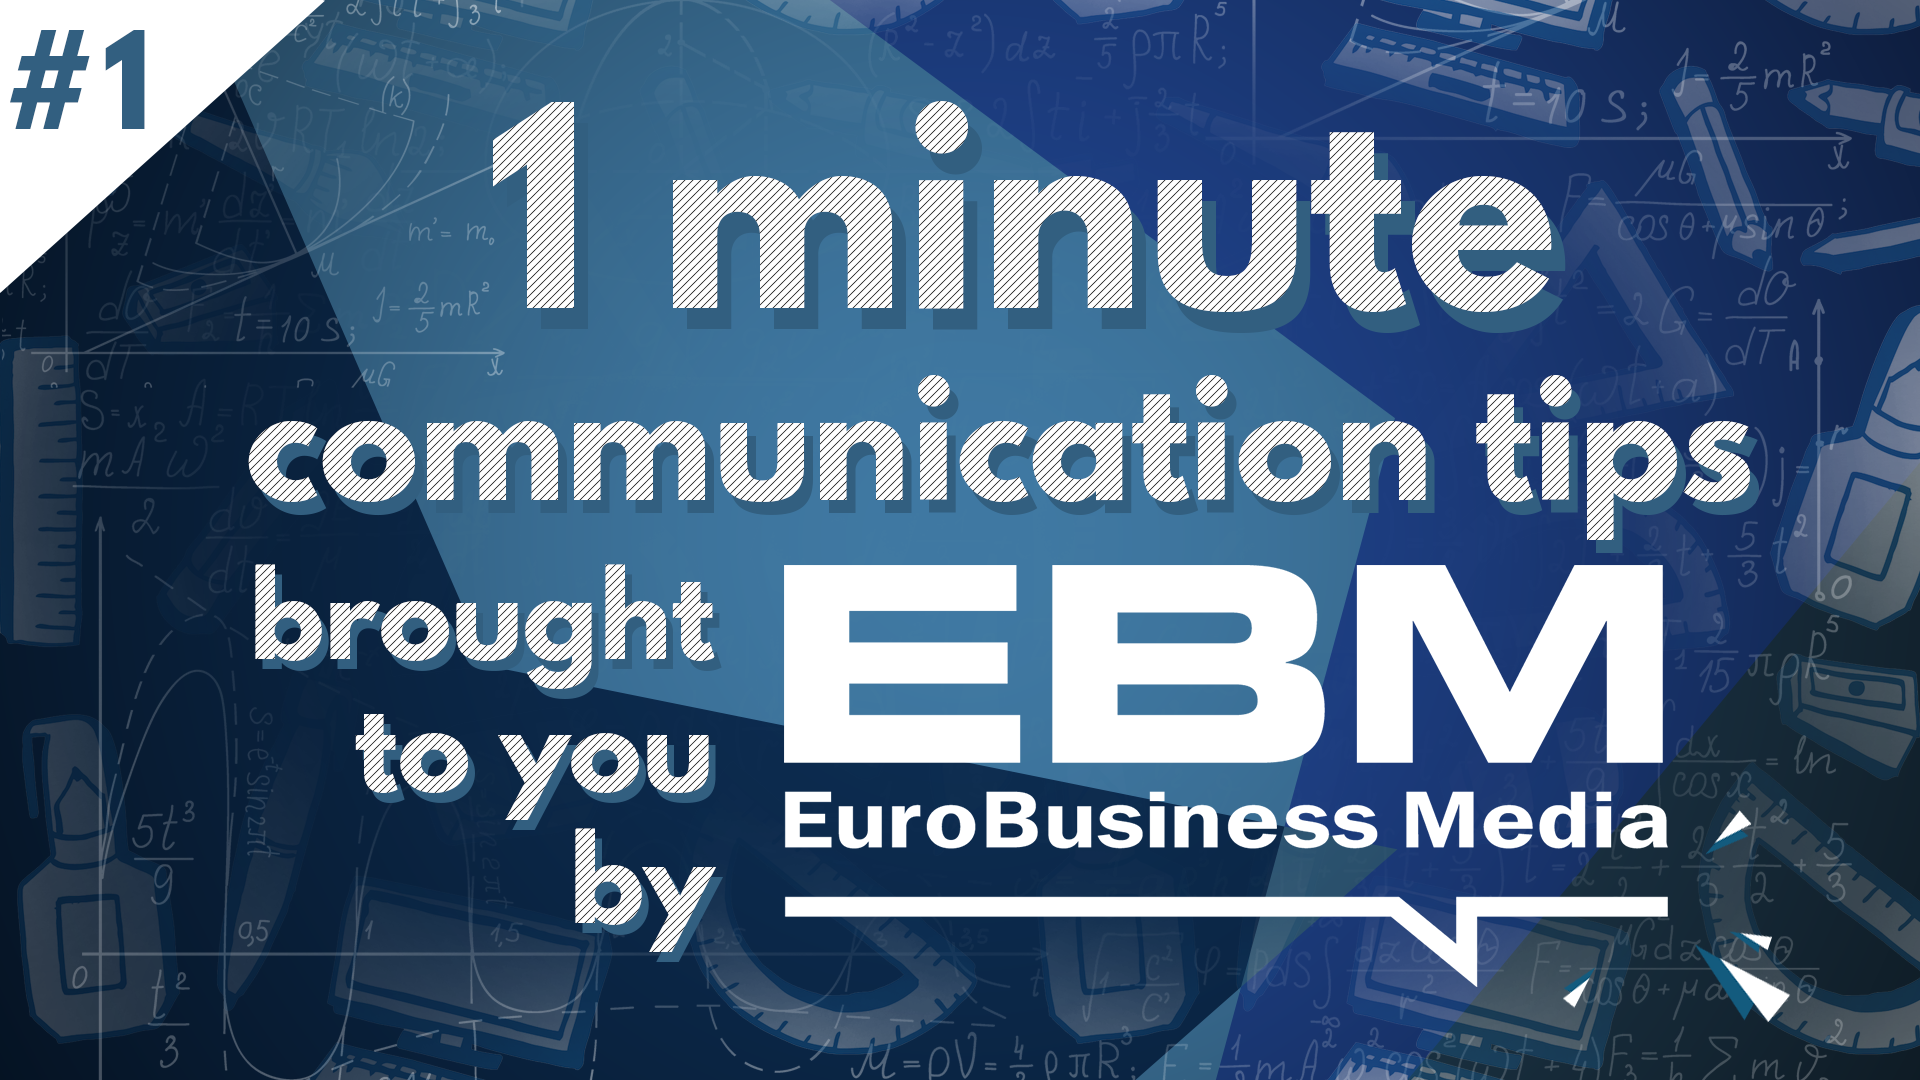 EBM Communication Tips Episode 1: Communic8™